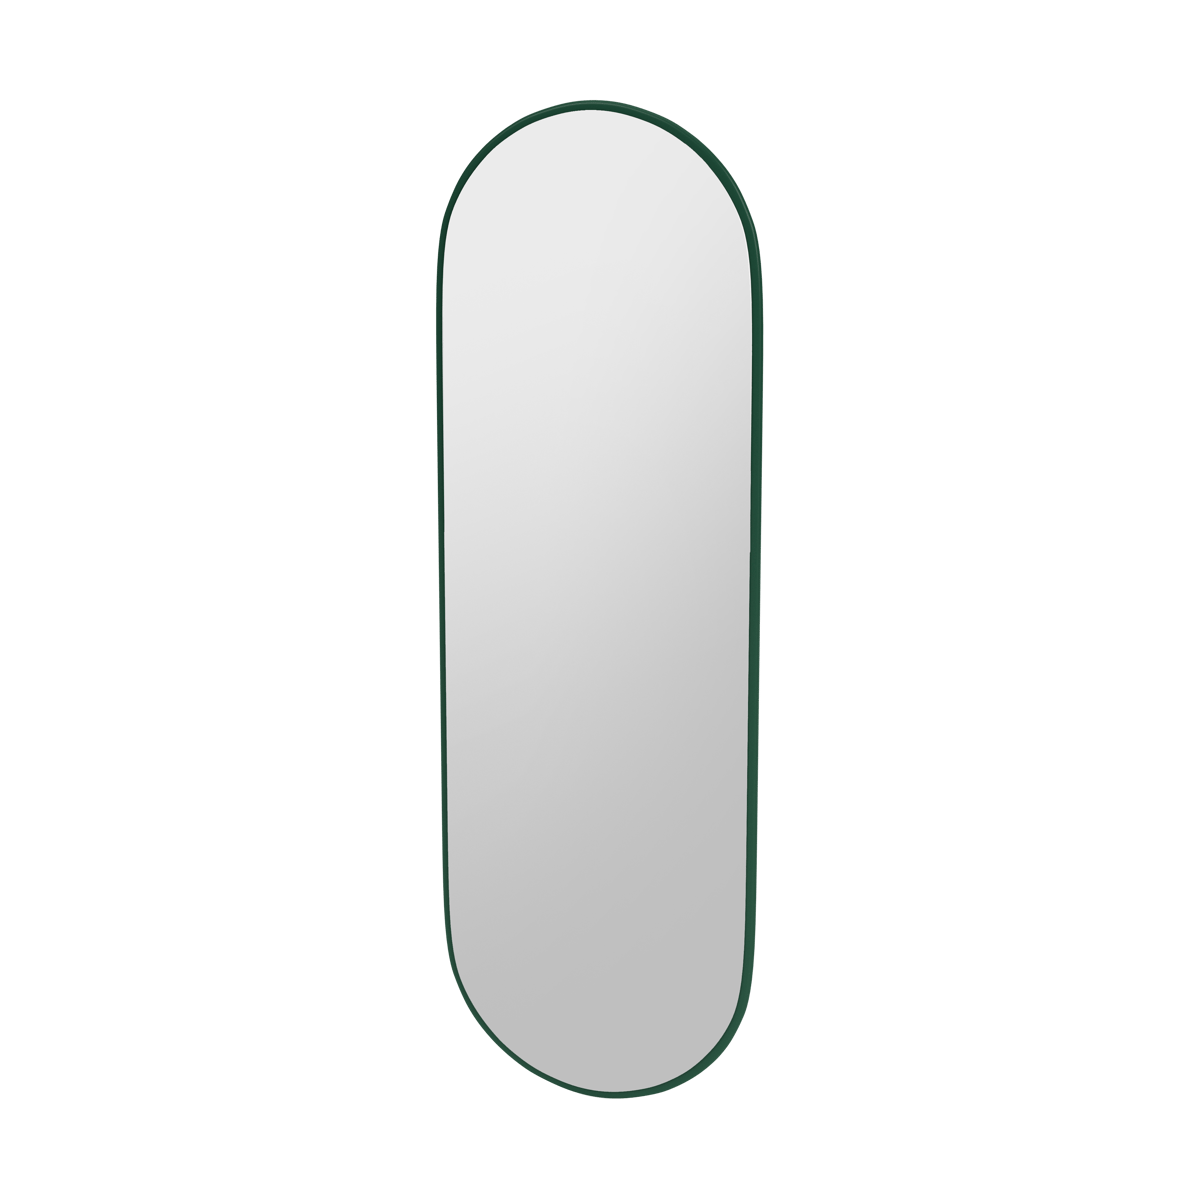 Montana FIGUUR Mirror Spiegel - SP824R Pine